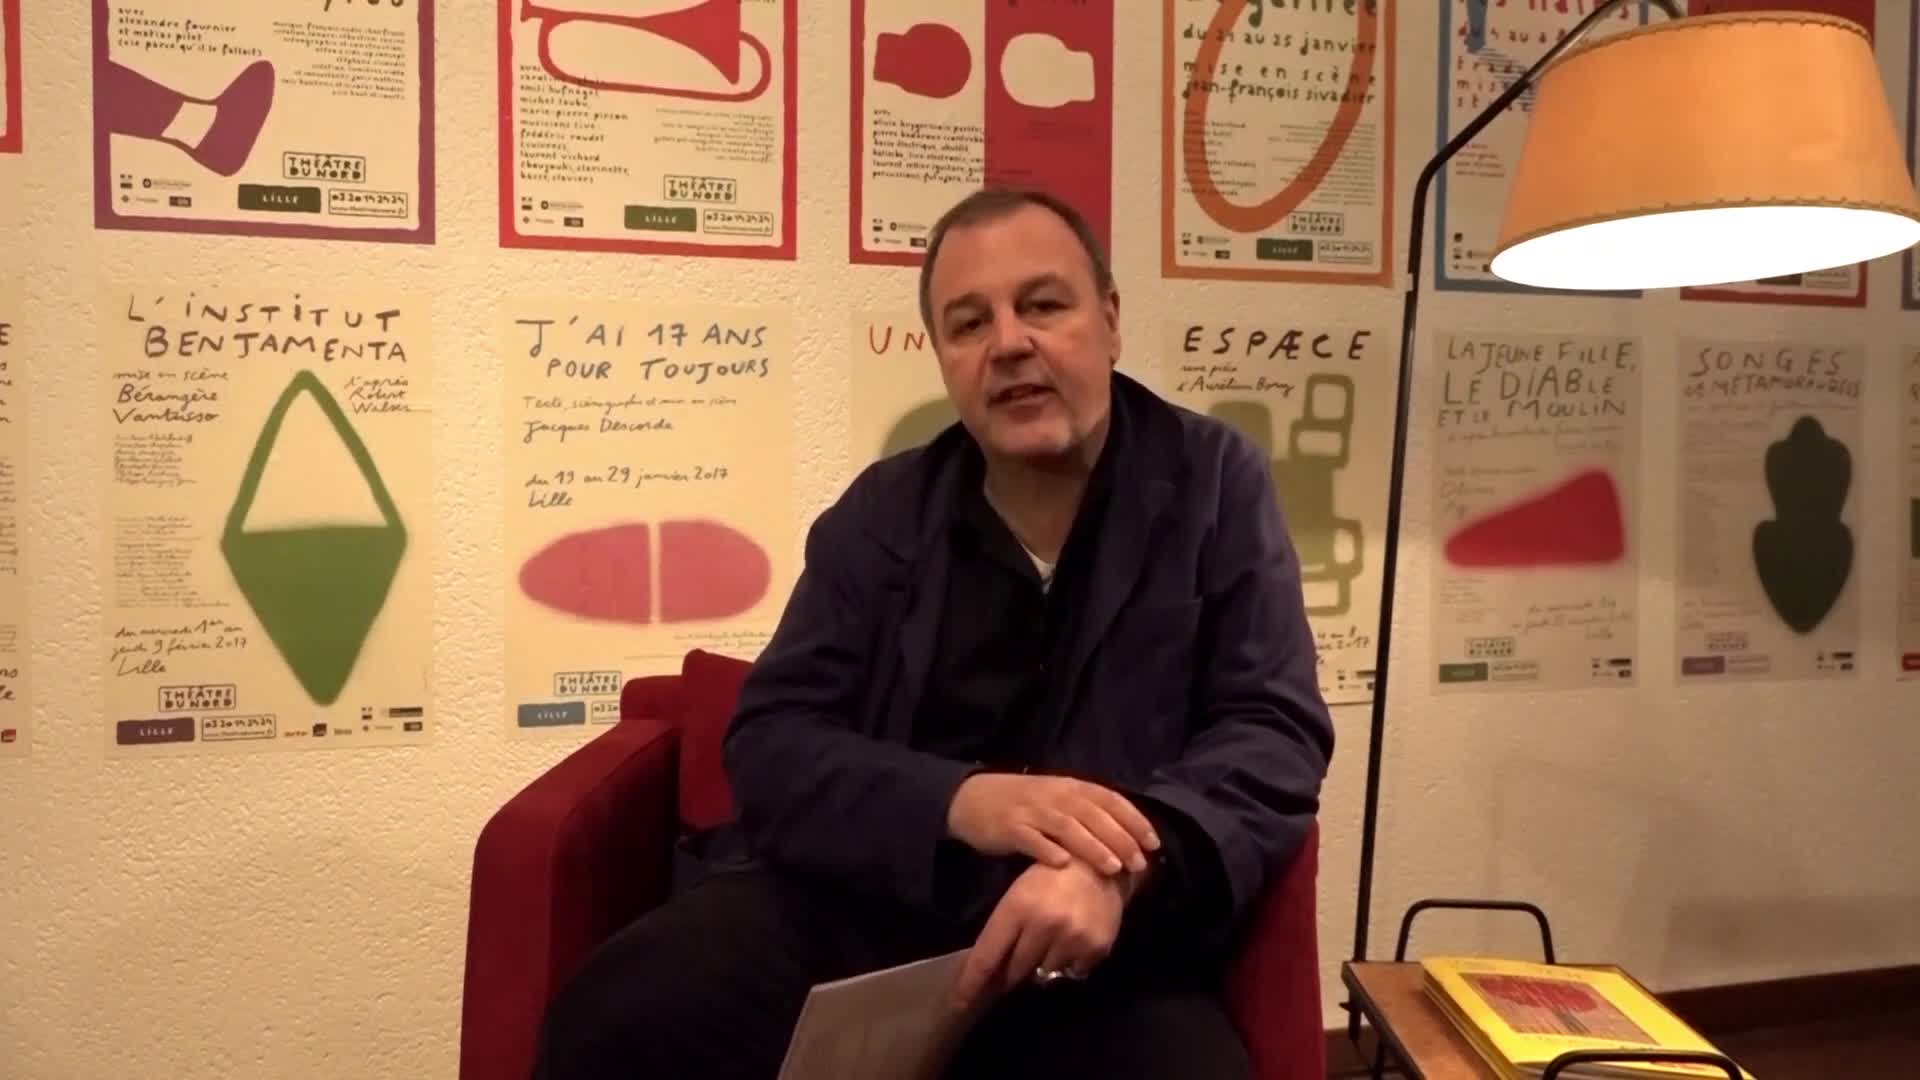 Vidéo "La Faculté des rêves" - Entretien avec Christophe Rauck